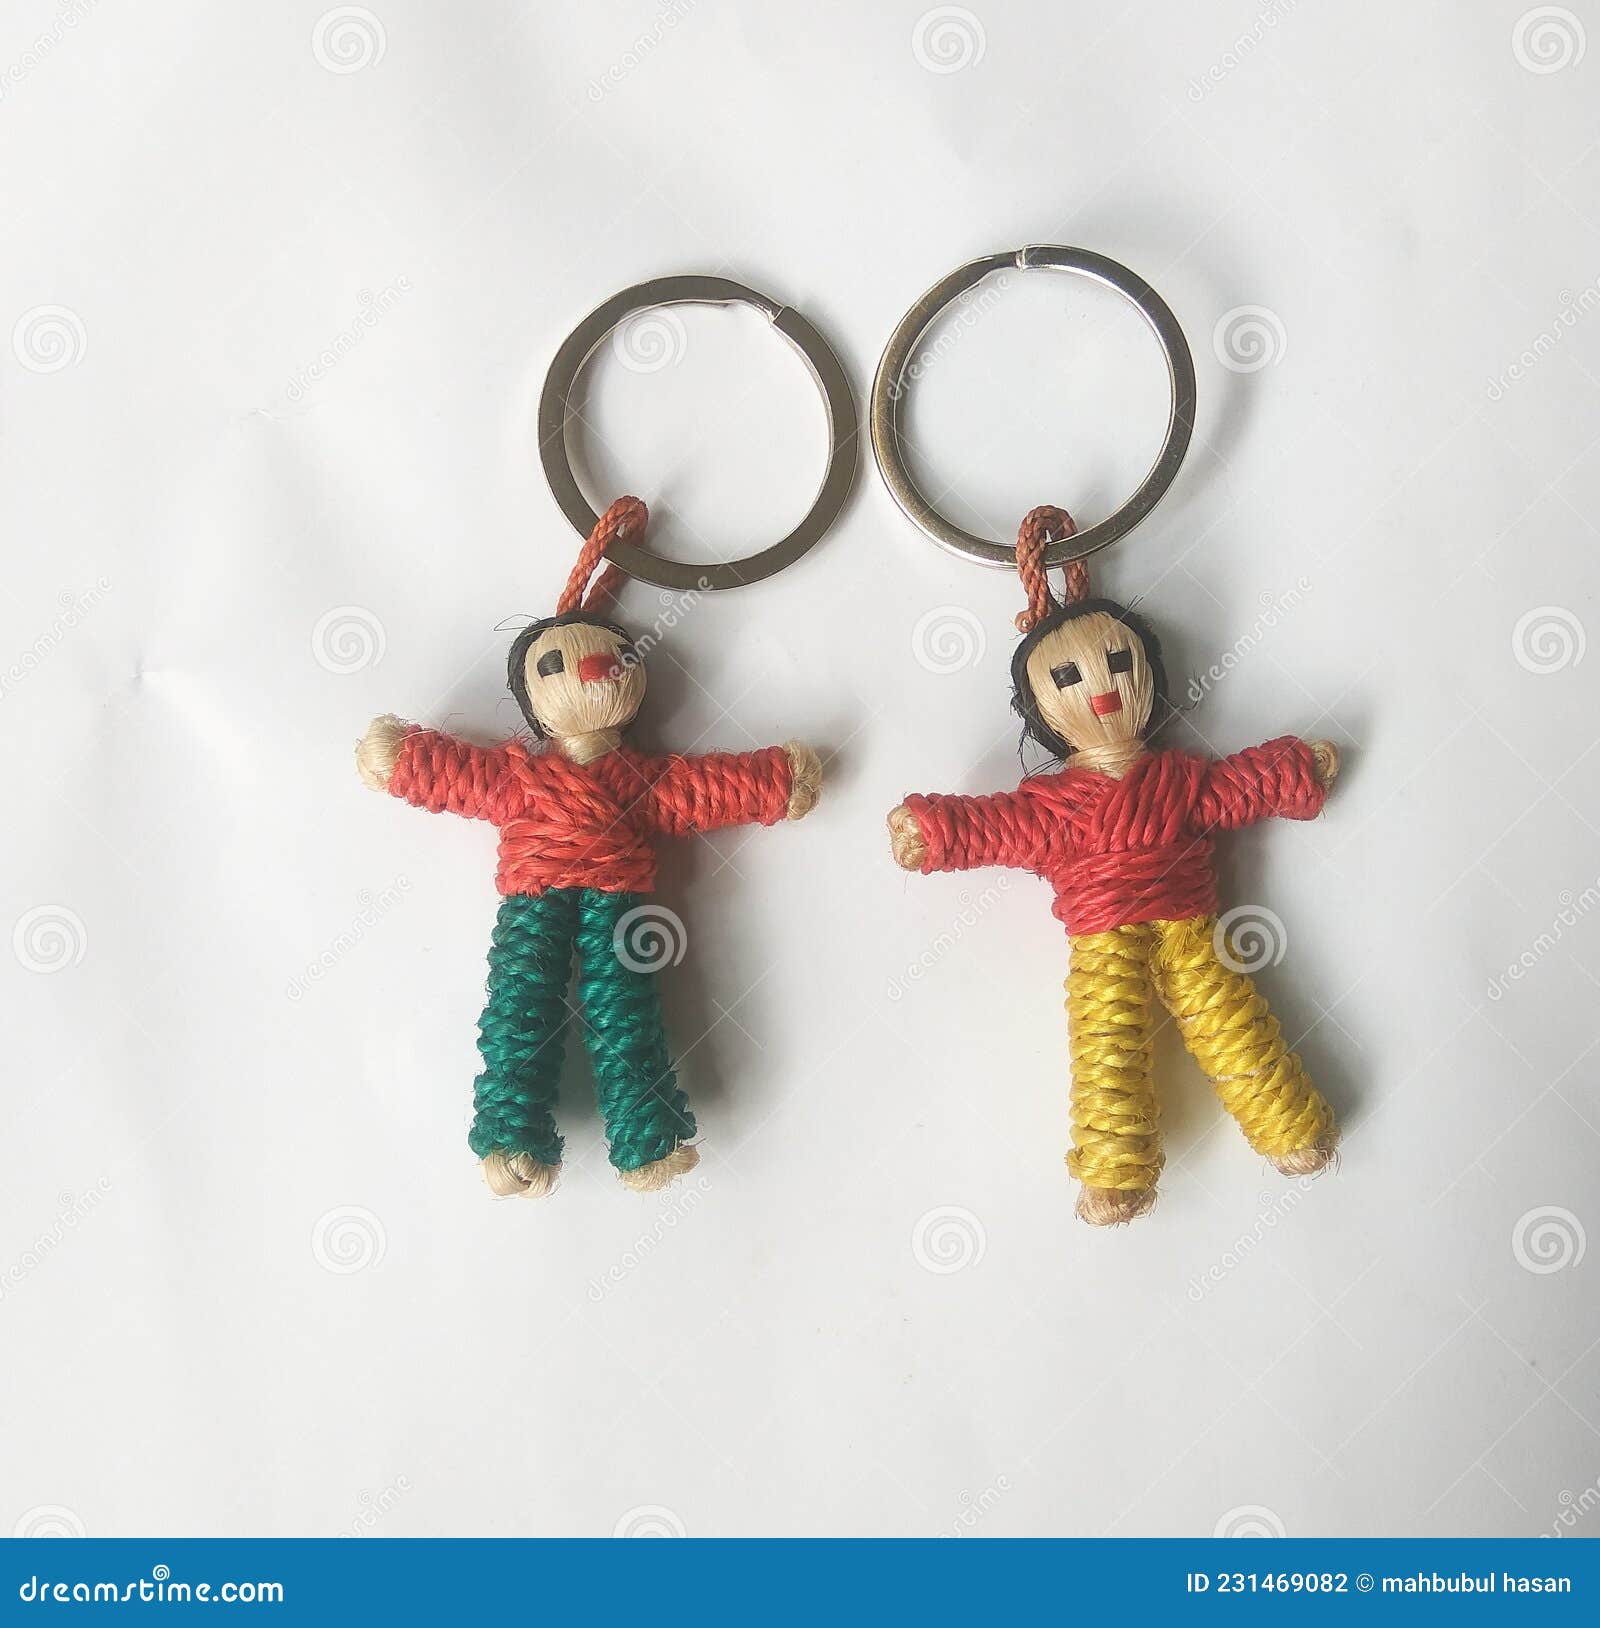 Cute Sleeping Baby Doll Keychain Pompom Key Chain | Cute Baby Doll Fur  Keychain - Key Chains - Aliexpress